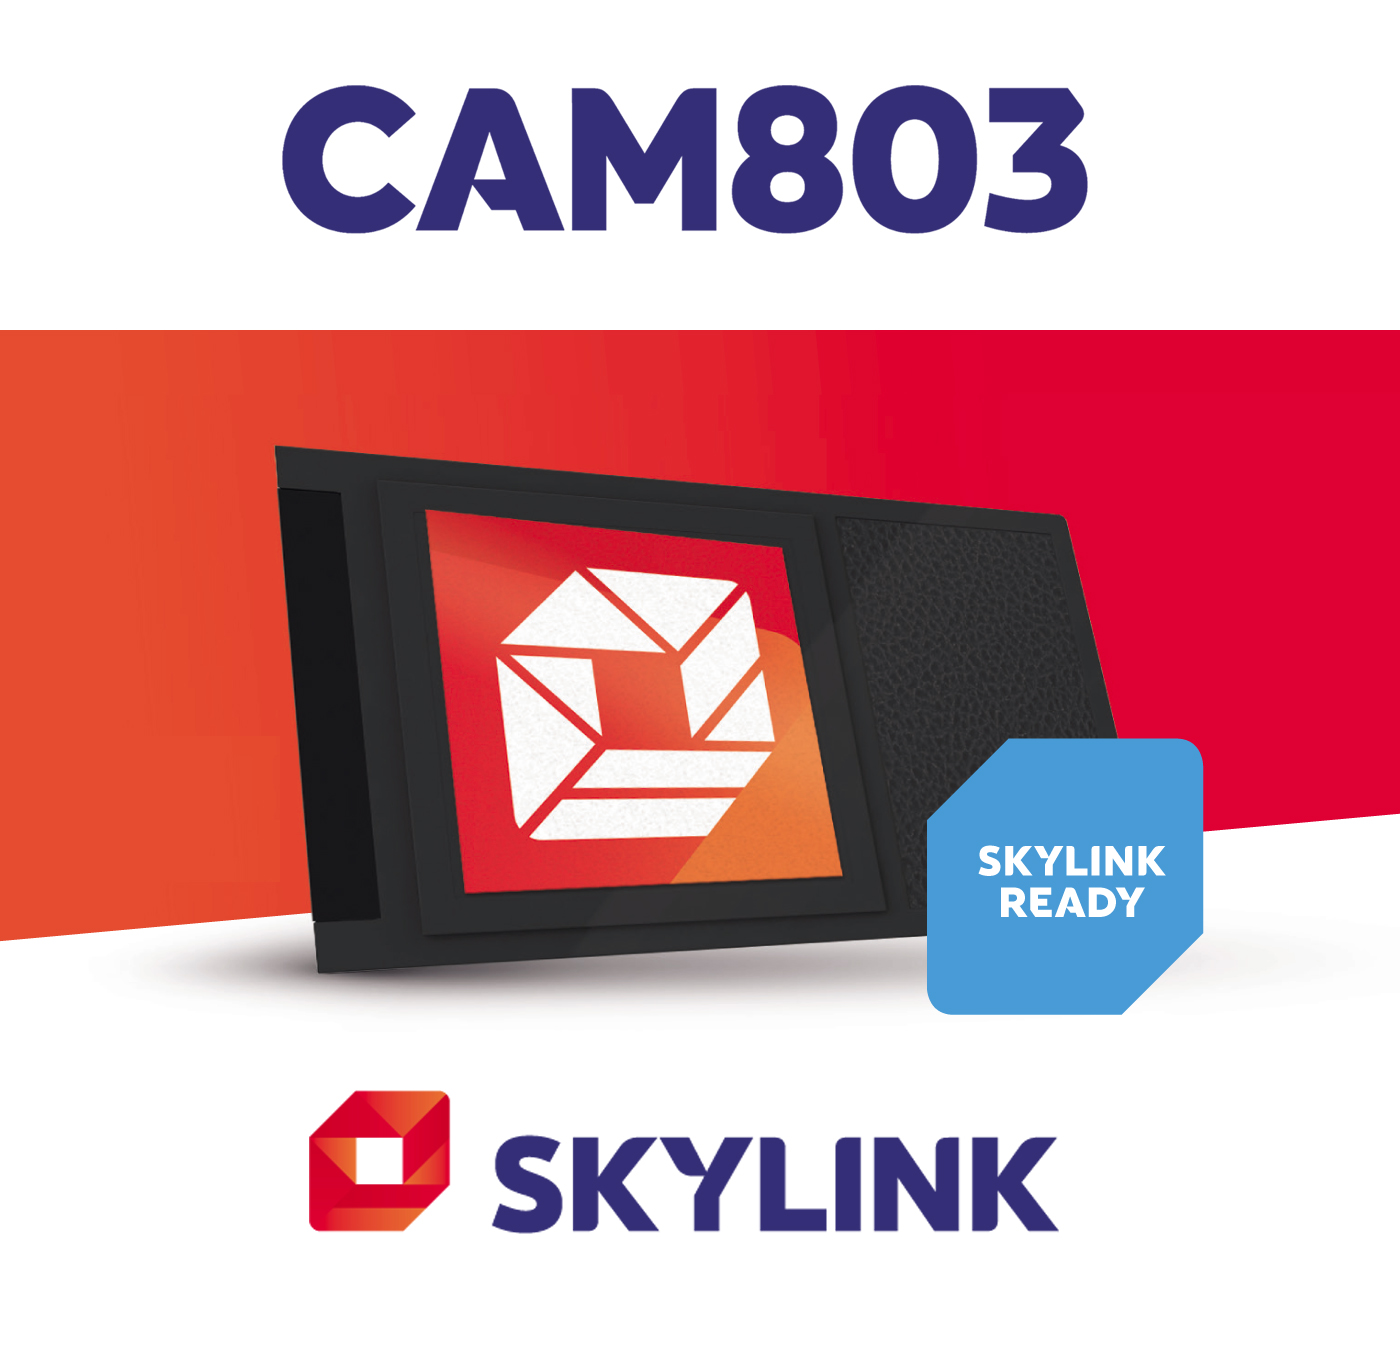 Nagravision Skylink CAM803 satelitní modul s kartou